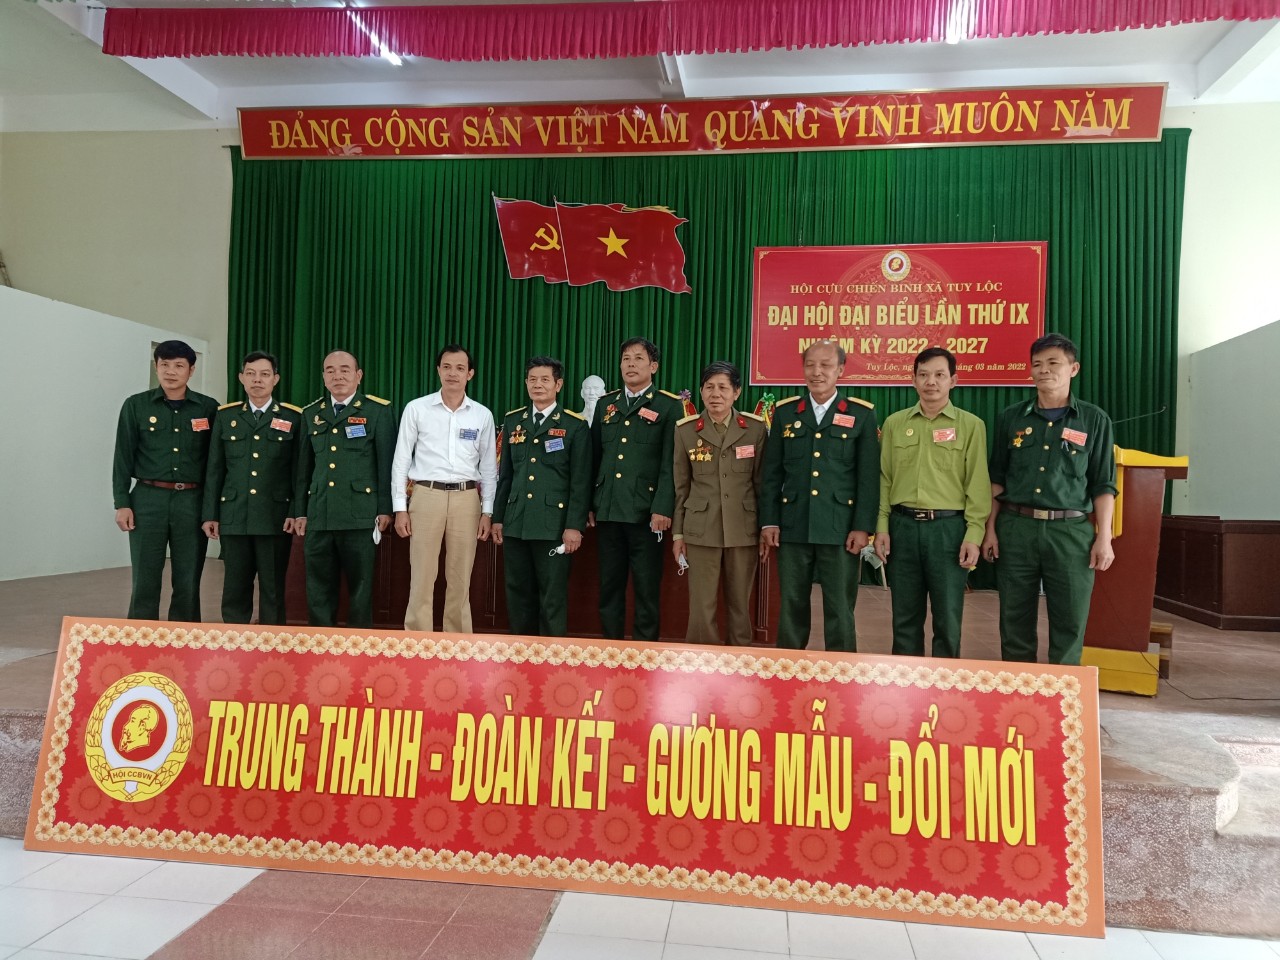 KỶ NIỆM 33 năm ngày thành lập Cựu Chiến Binh Việt Nam (06/12/1989 – 06/12/2022)